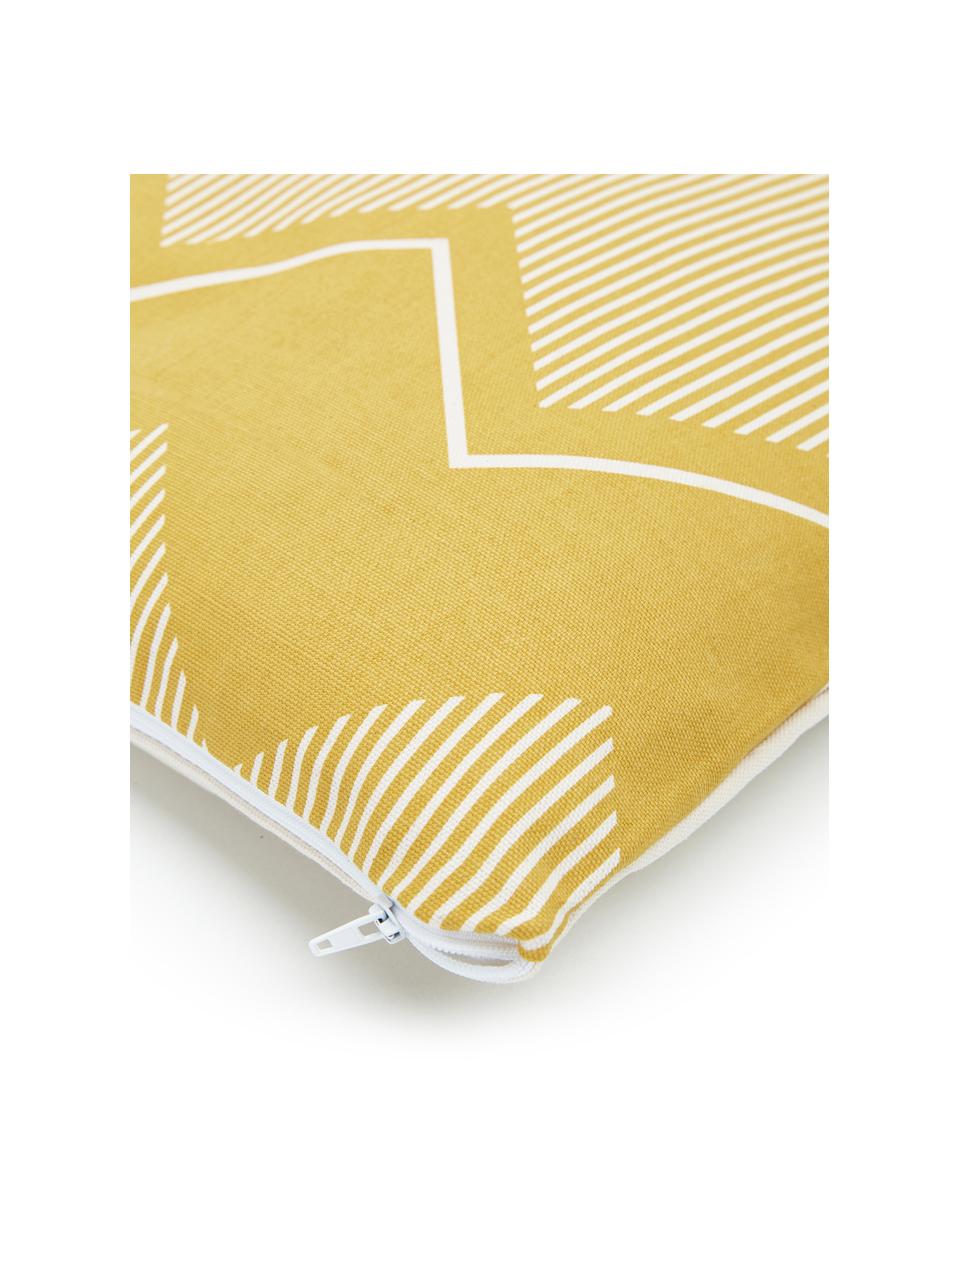 Kissenhülle Indy, 100% Baumwolle, Gelb, Weiß, B 45 x L 45 cm